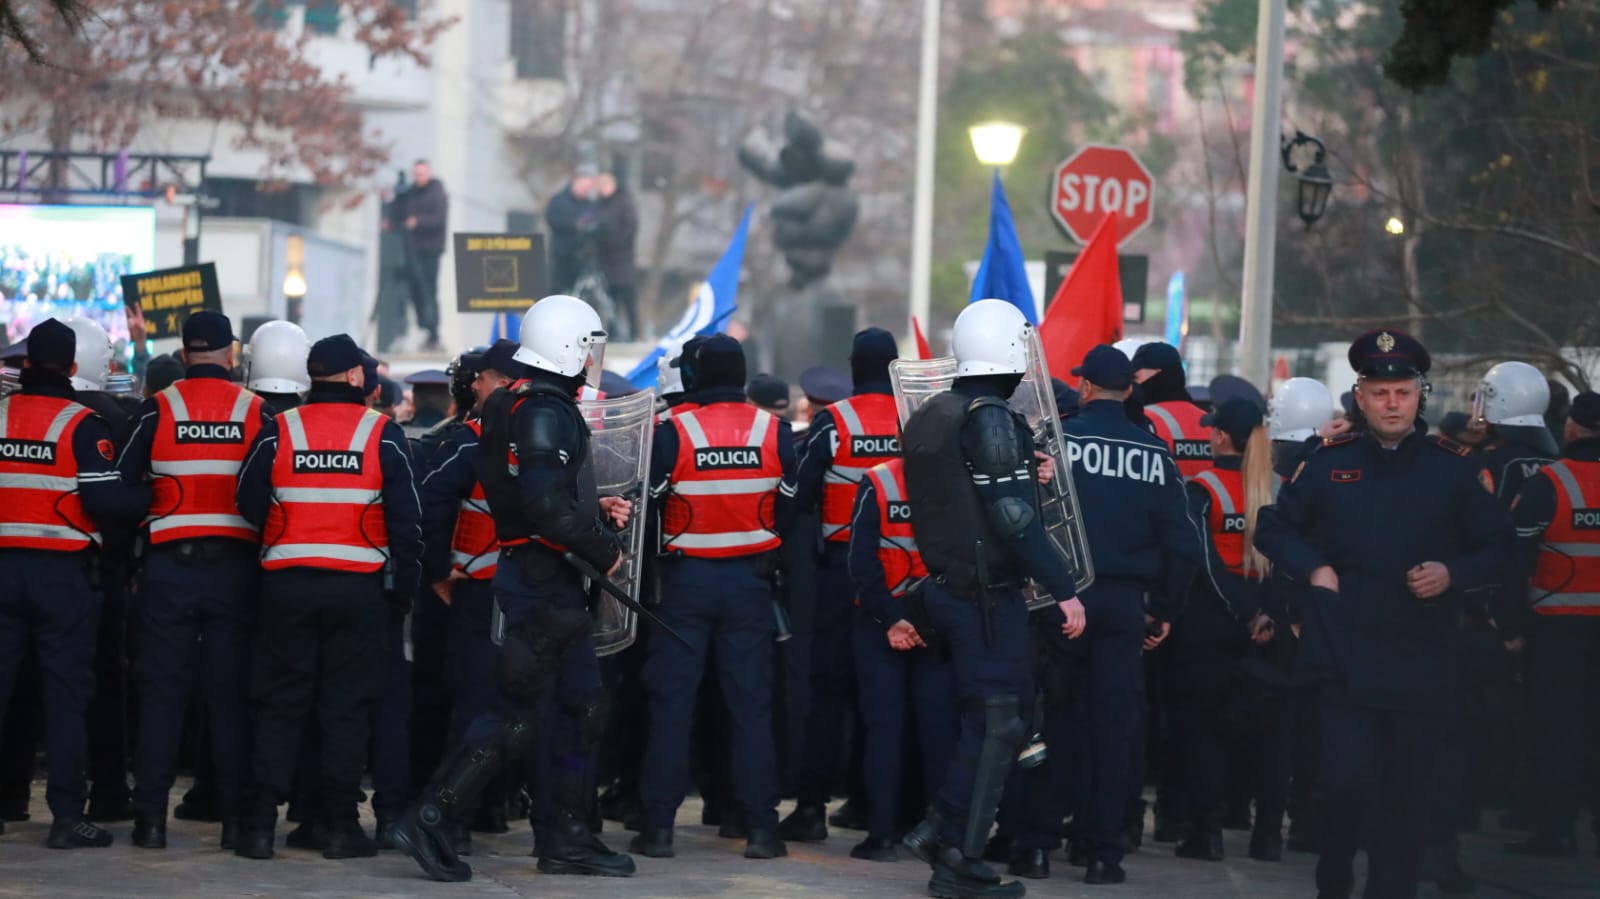 Policë të rreshtuar në hyrje të kuvendit për të ndalur hyrjen e qytetarëve protestues